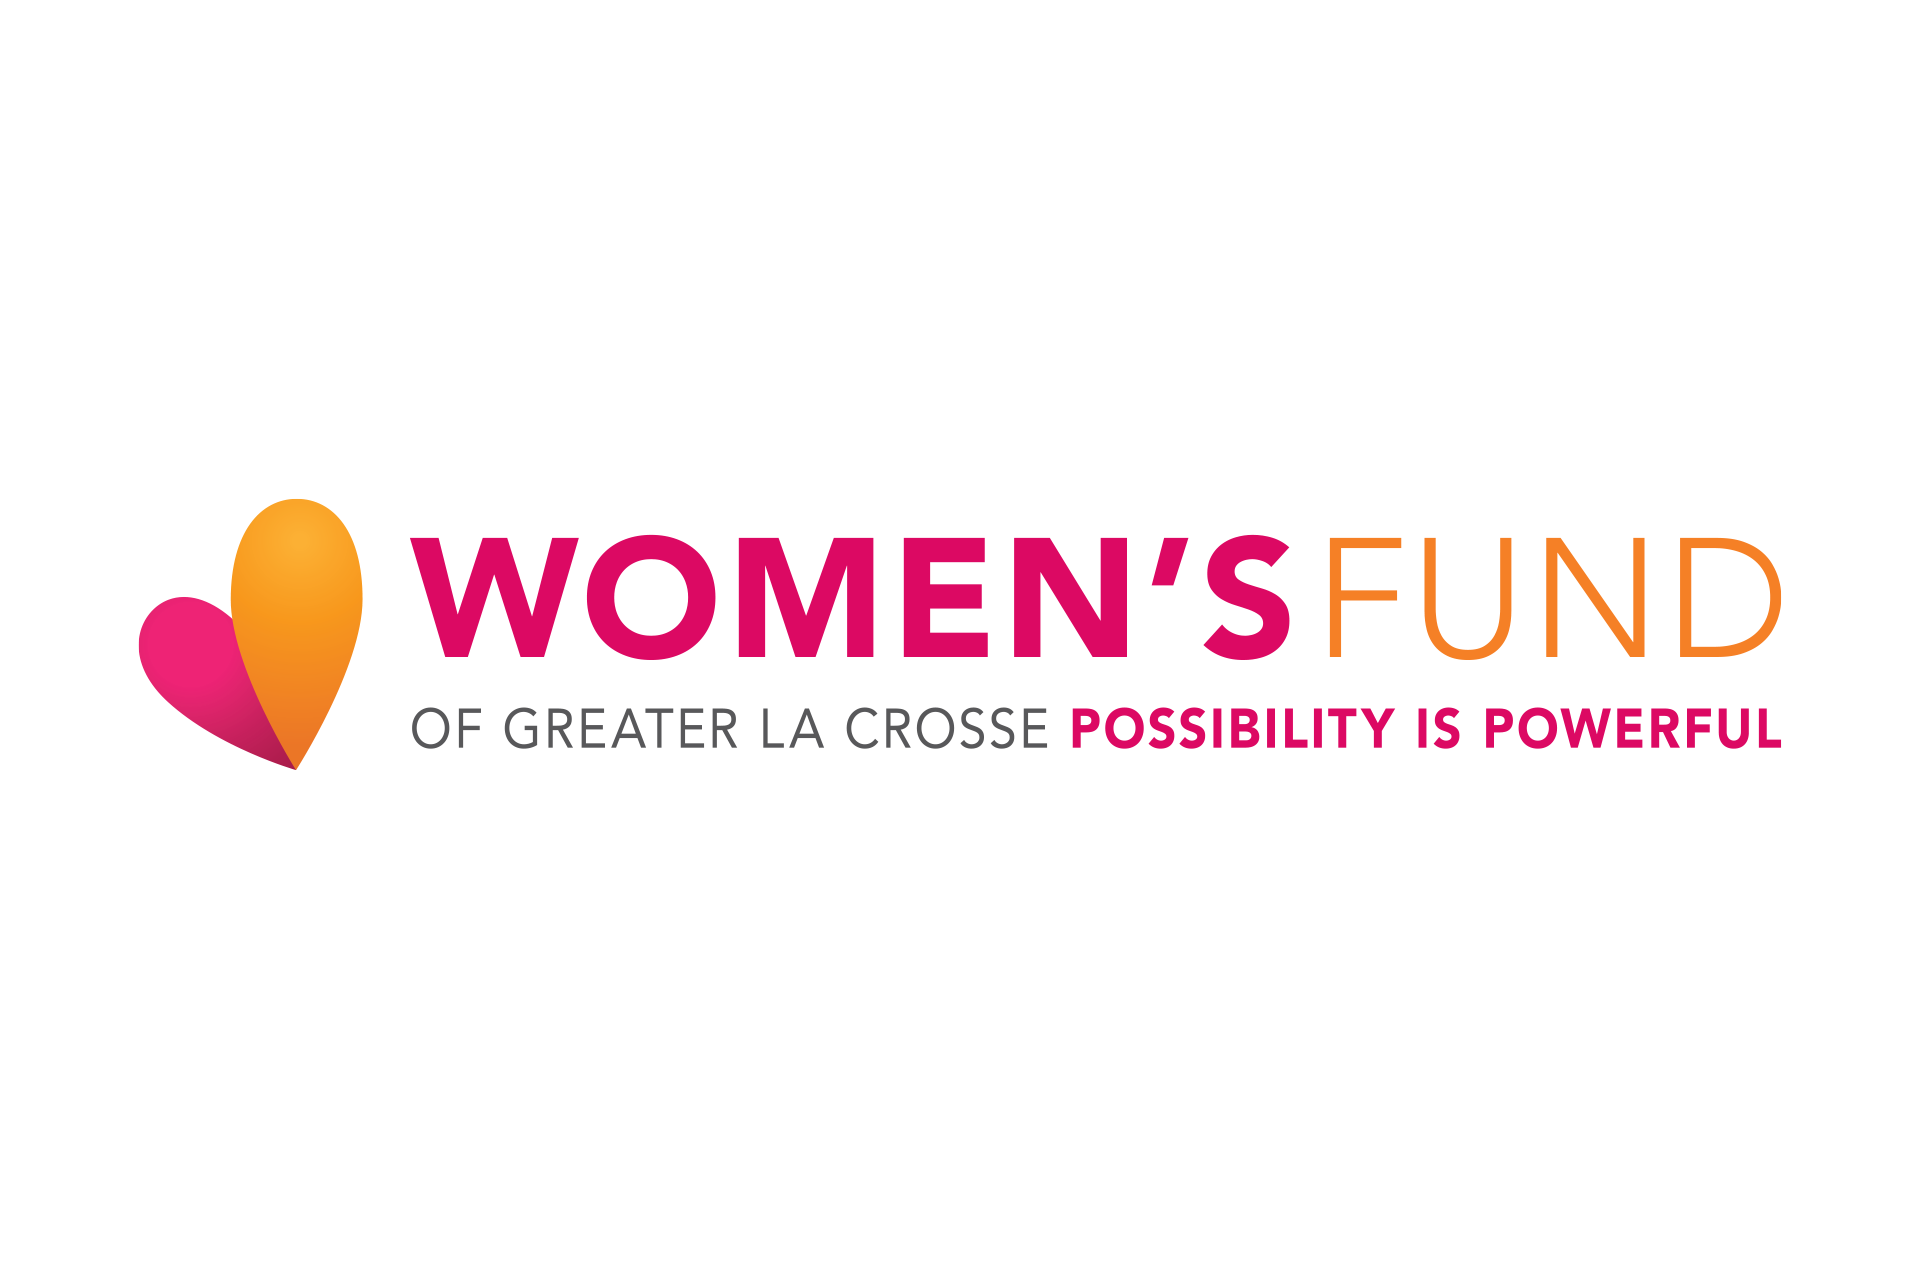 The Women's Fund of Greater La Crosse logo